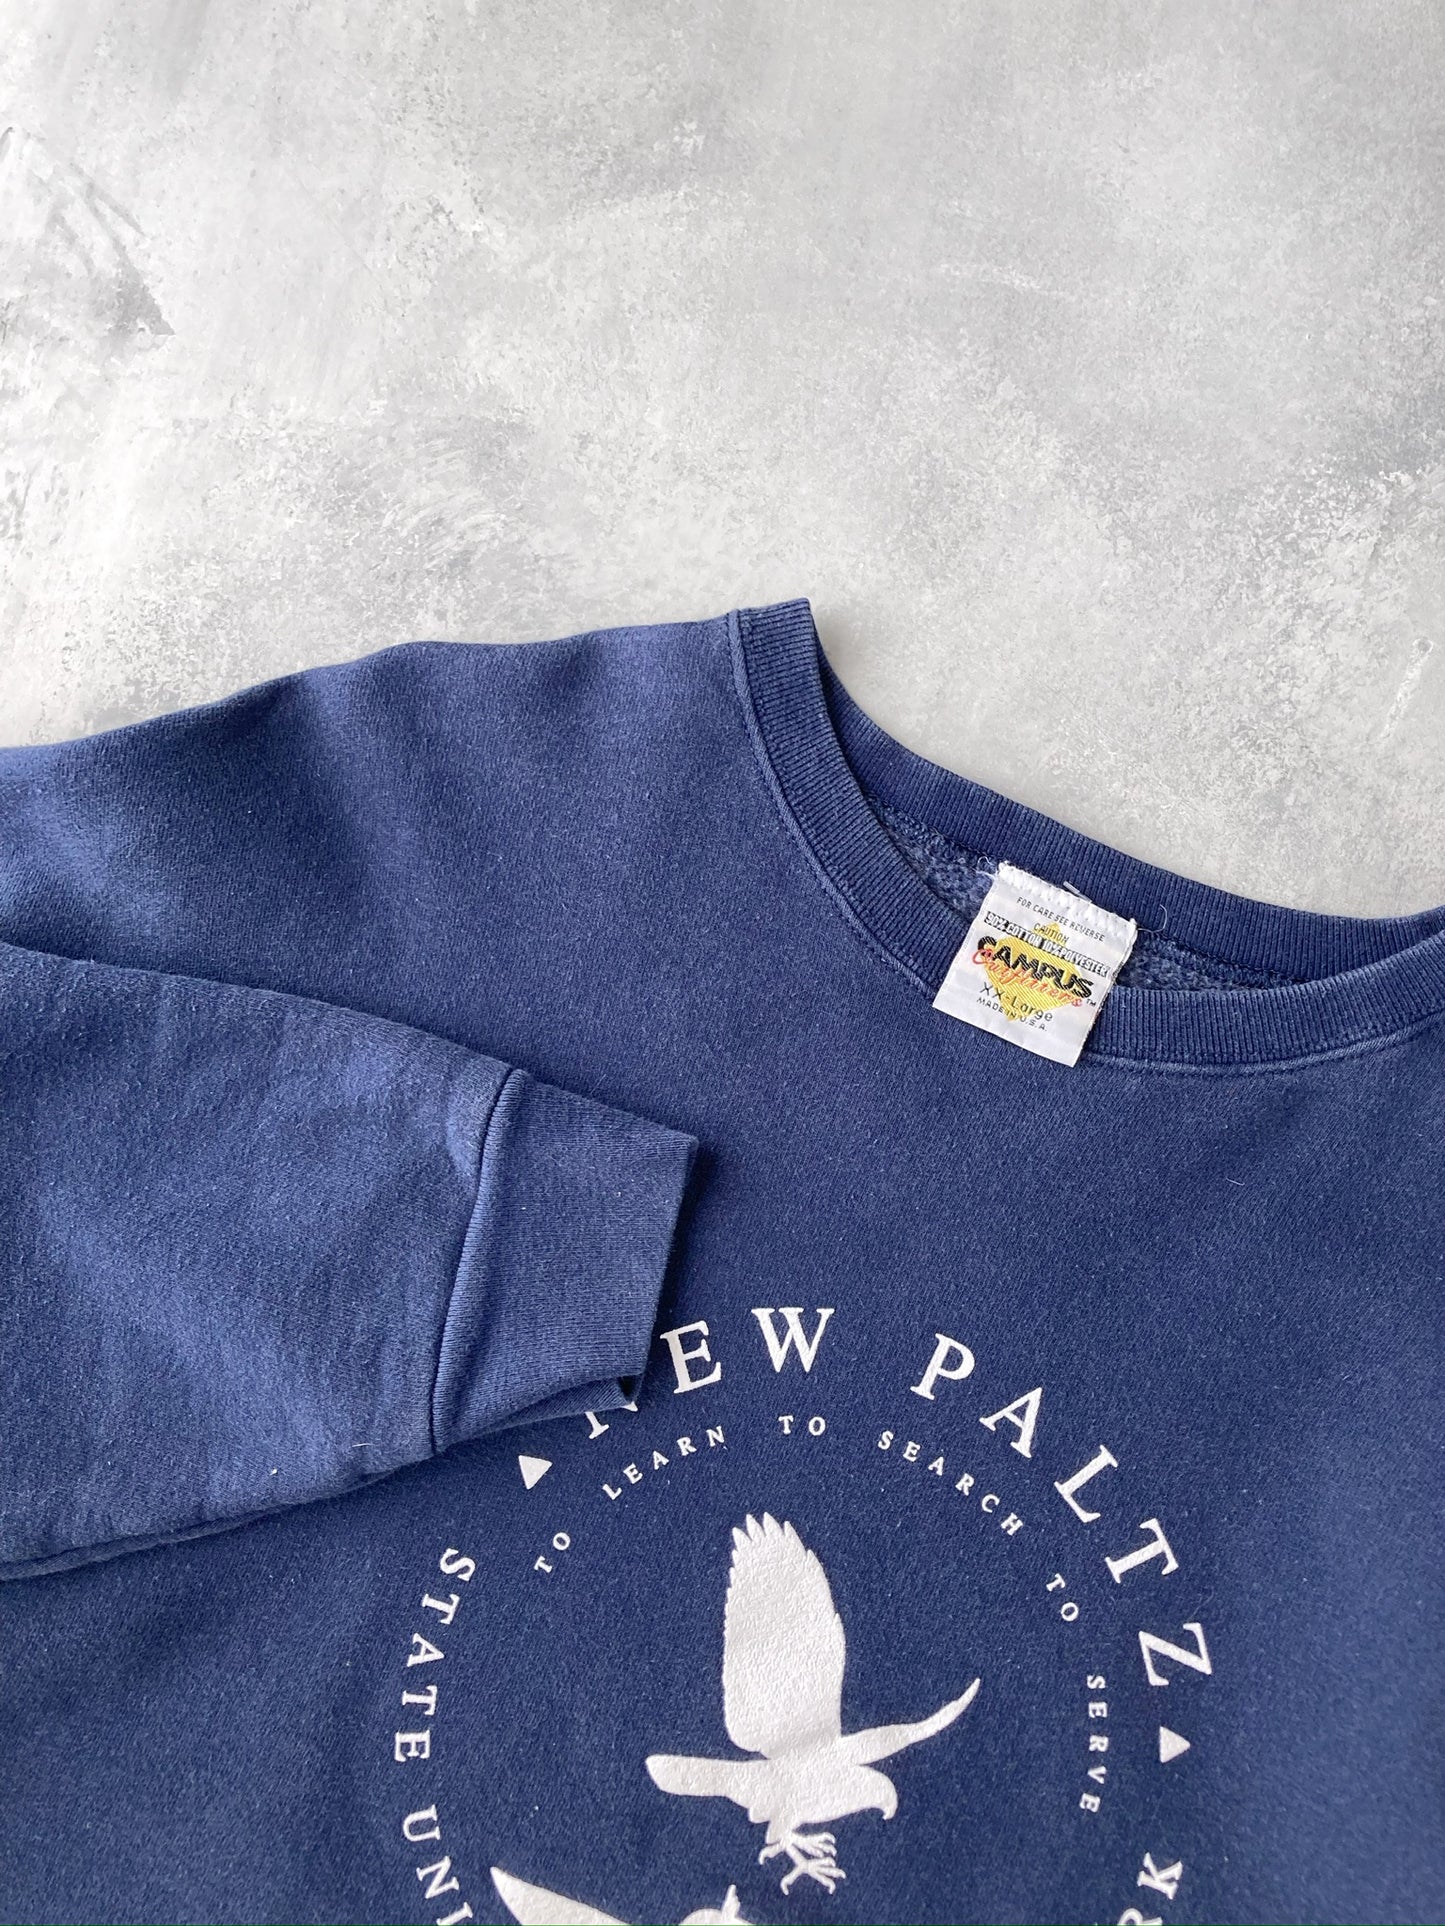 SUNY New Paltz Sweatshirt 90's - XXL